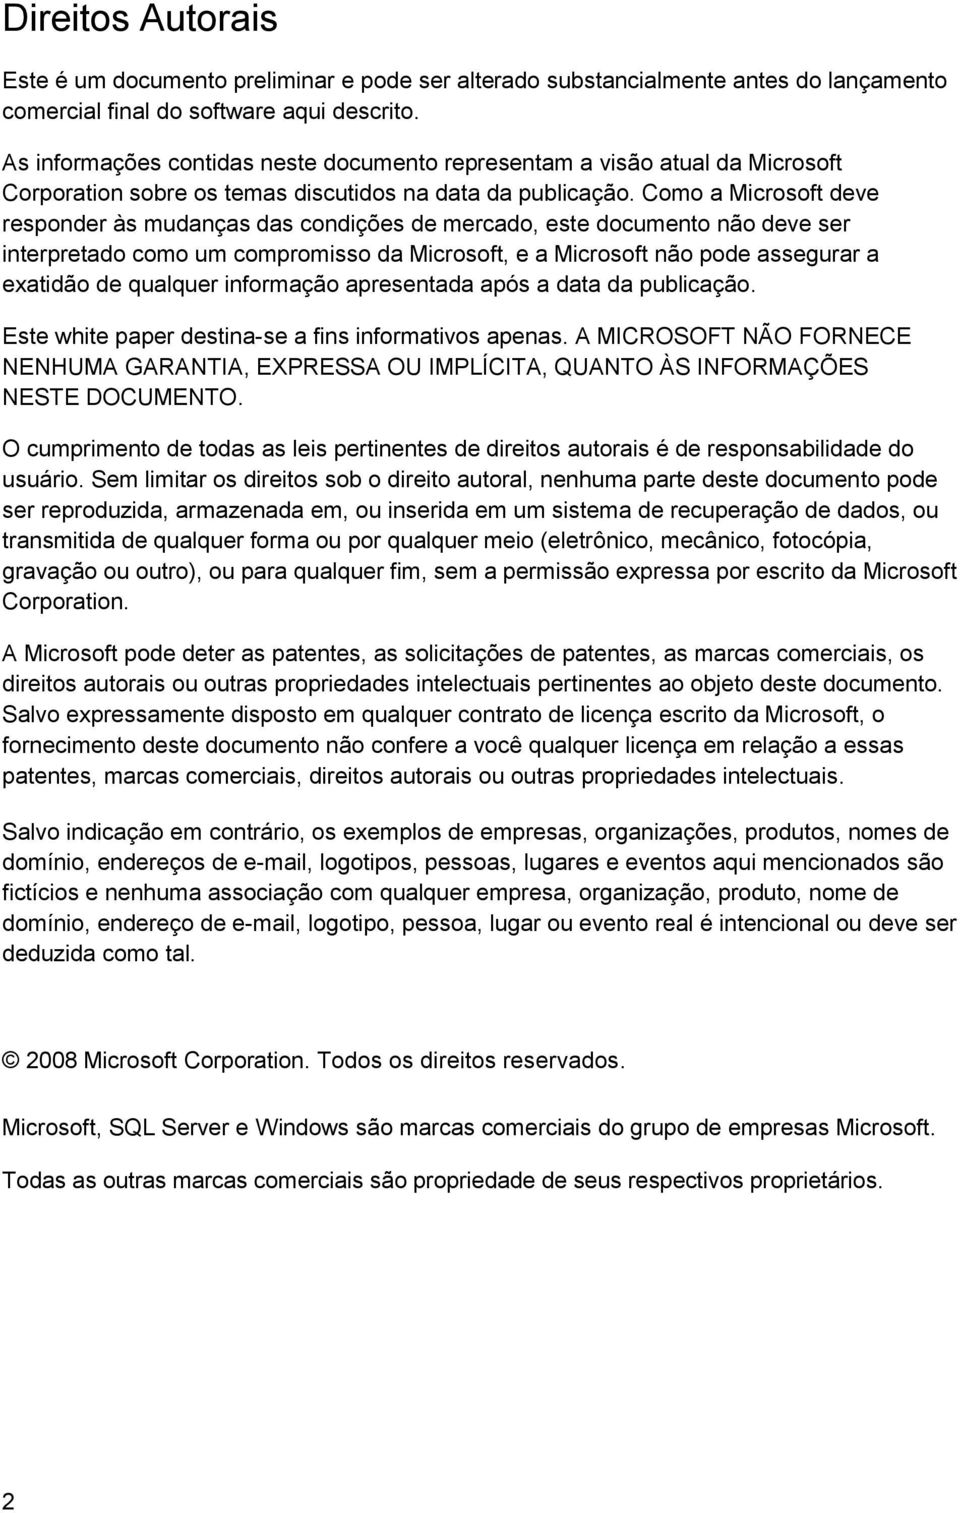 Como a Microsoft deve responder às mudanças das condições de mercado, este documento não deve ser interpretado como um compromisso da Microsoft, e a Microsoft não pode assegurar a exatidão de